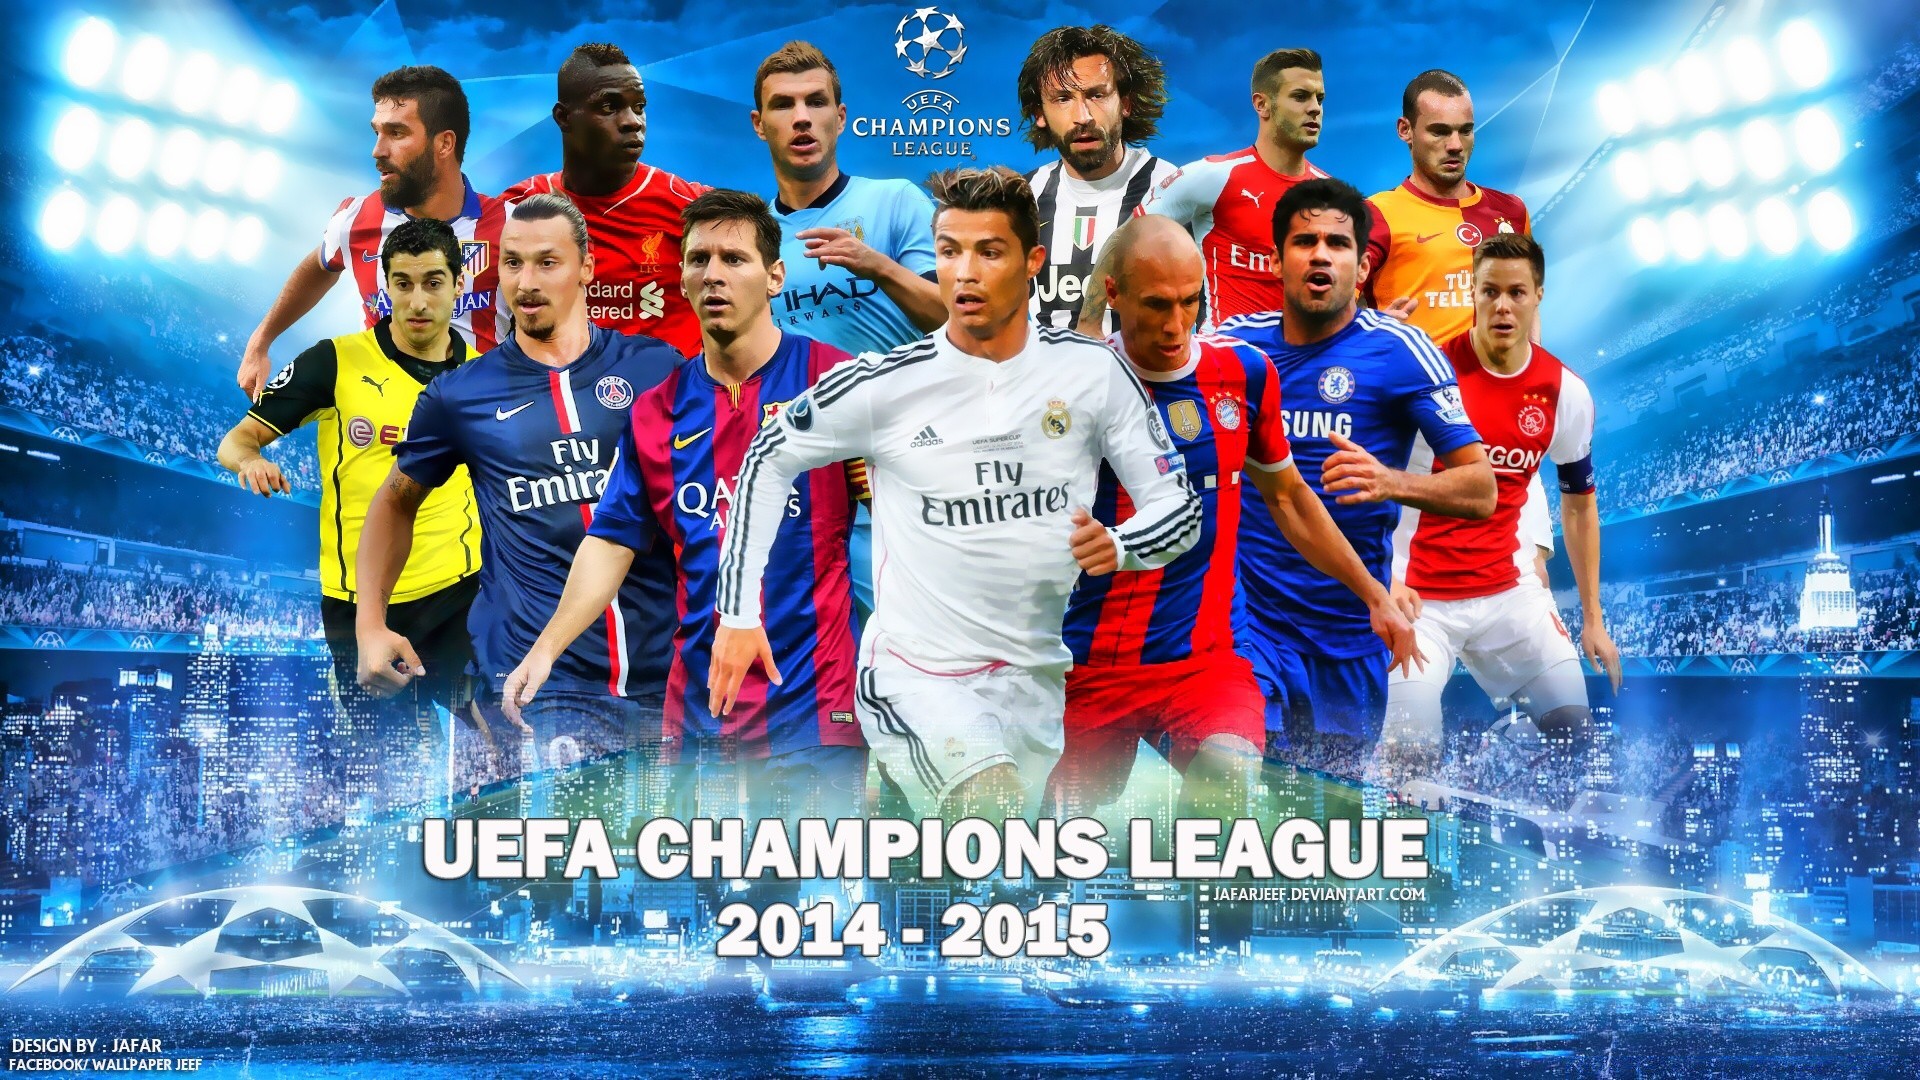 4 футбольная лига. Лига чемпионов. Футбольная обложка. Обложка футбольной группы. UEFA Champions League футбол.